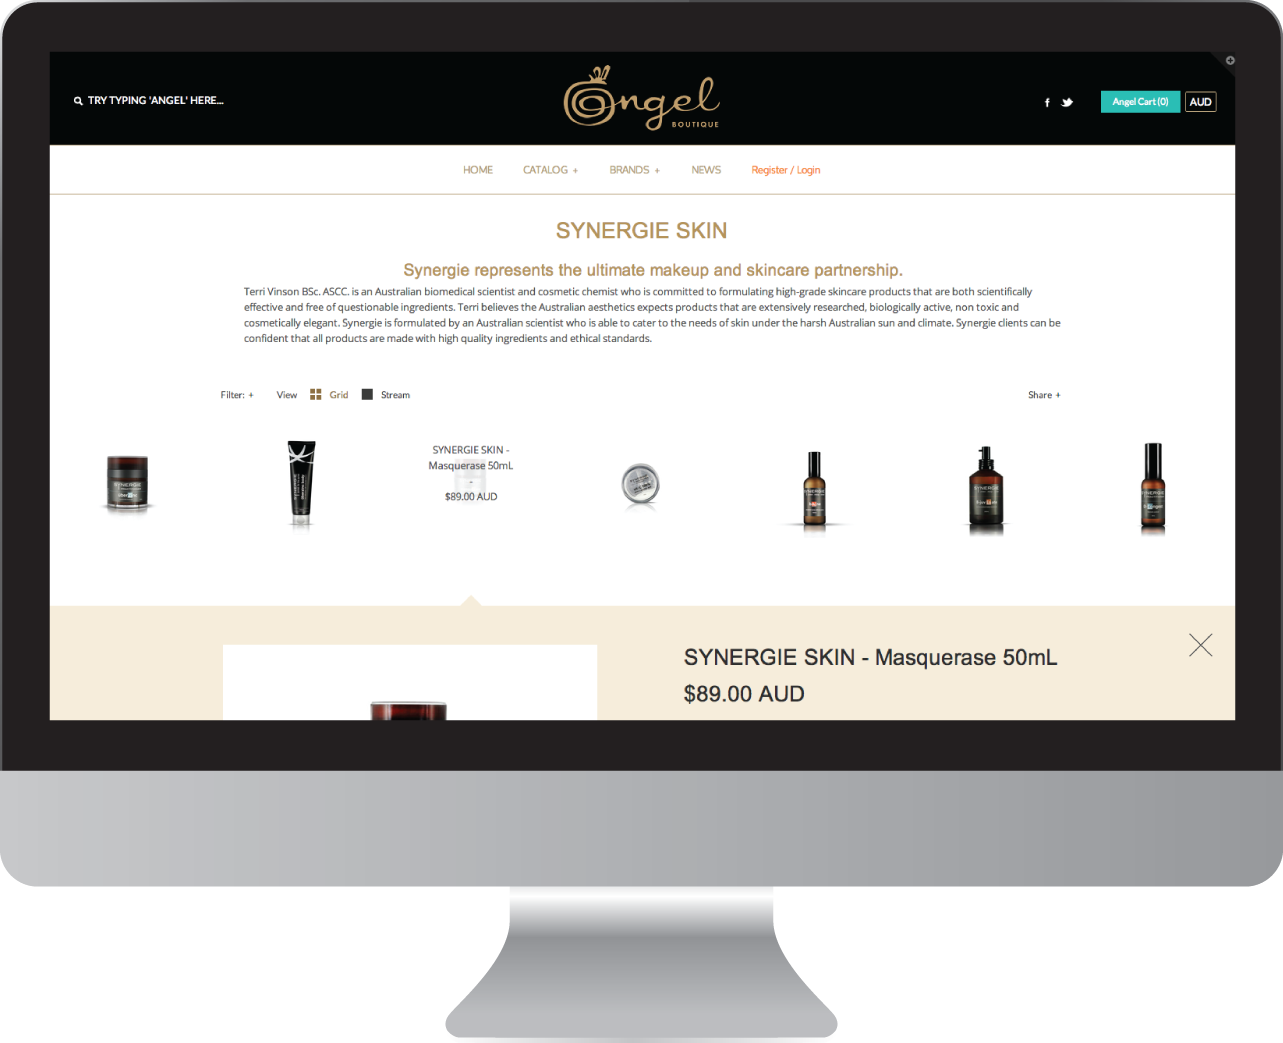 angel_boutique_website_design4.png